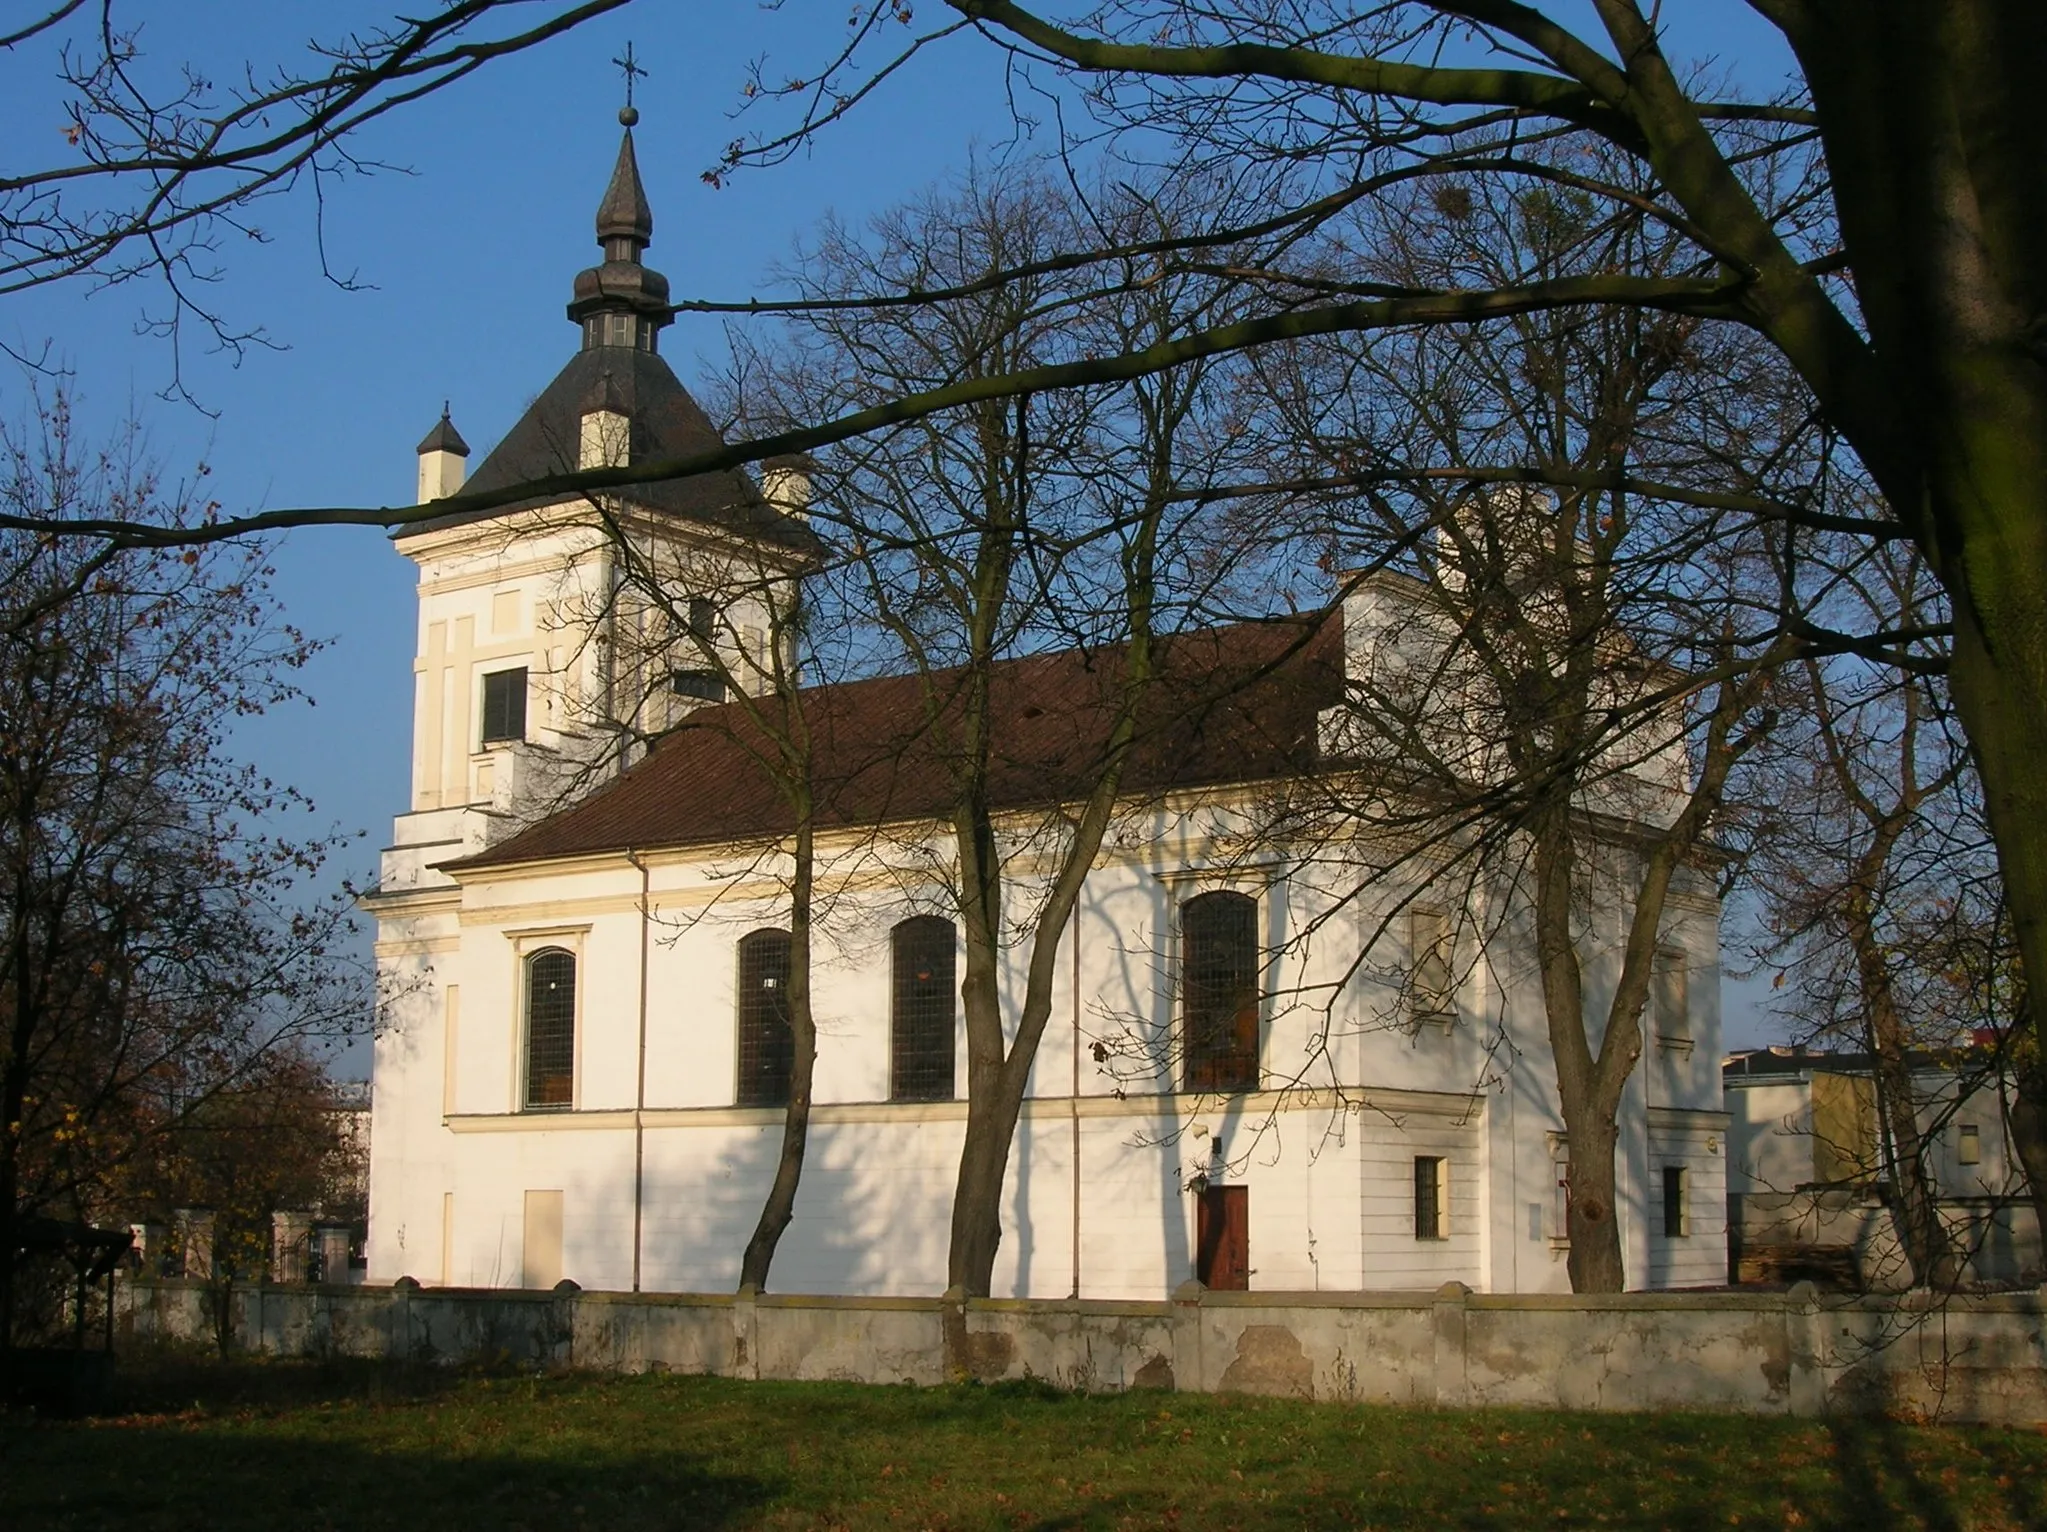 Photo showing: The church in Dobrzyń (Golub-Dobrzyń), Poland